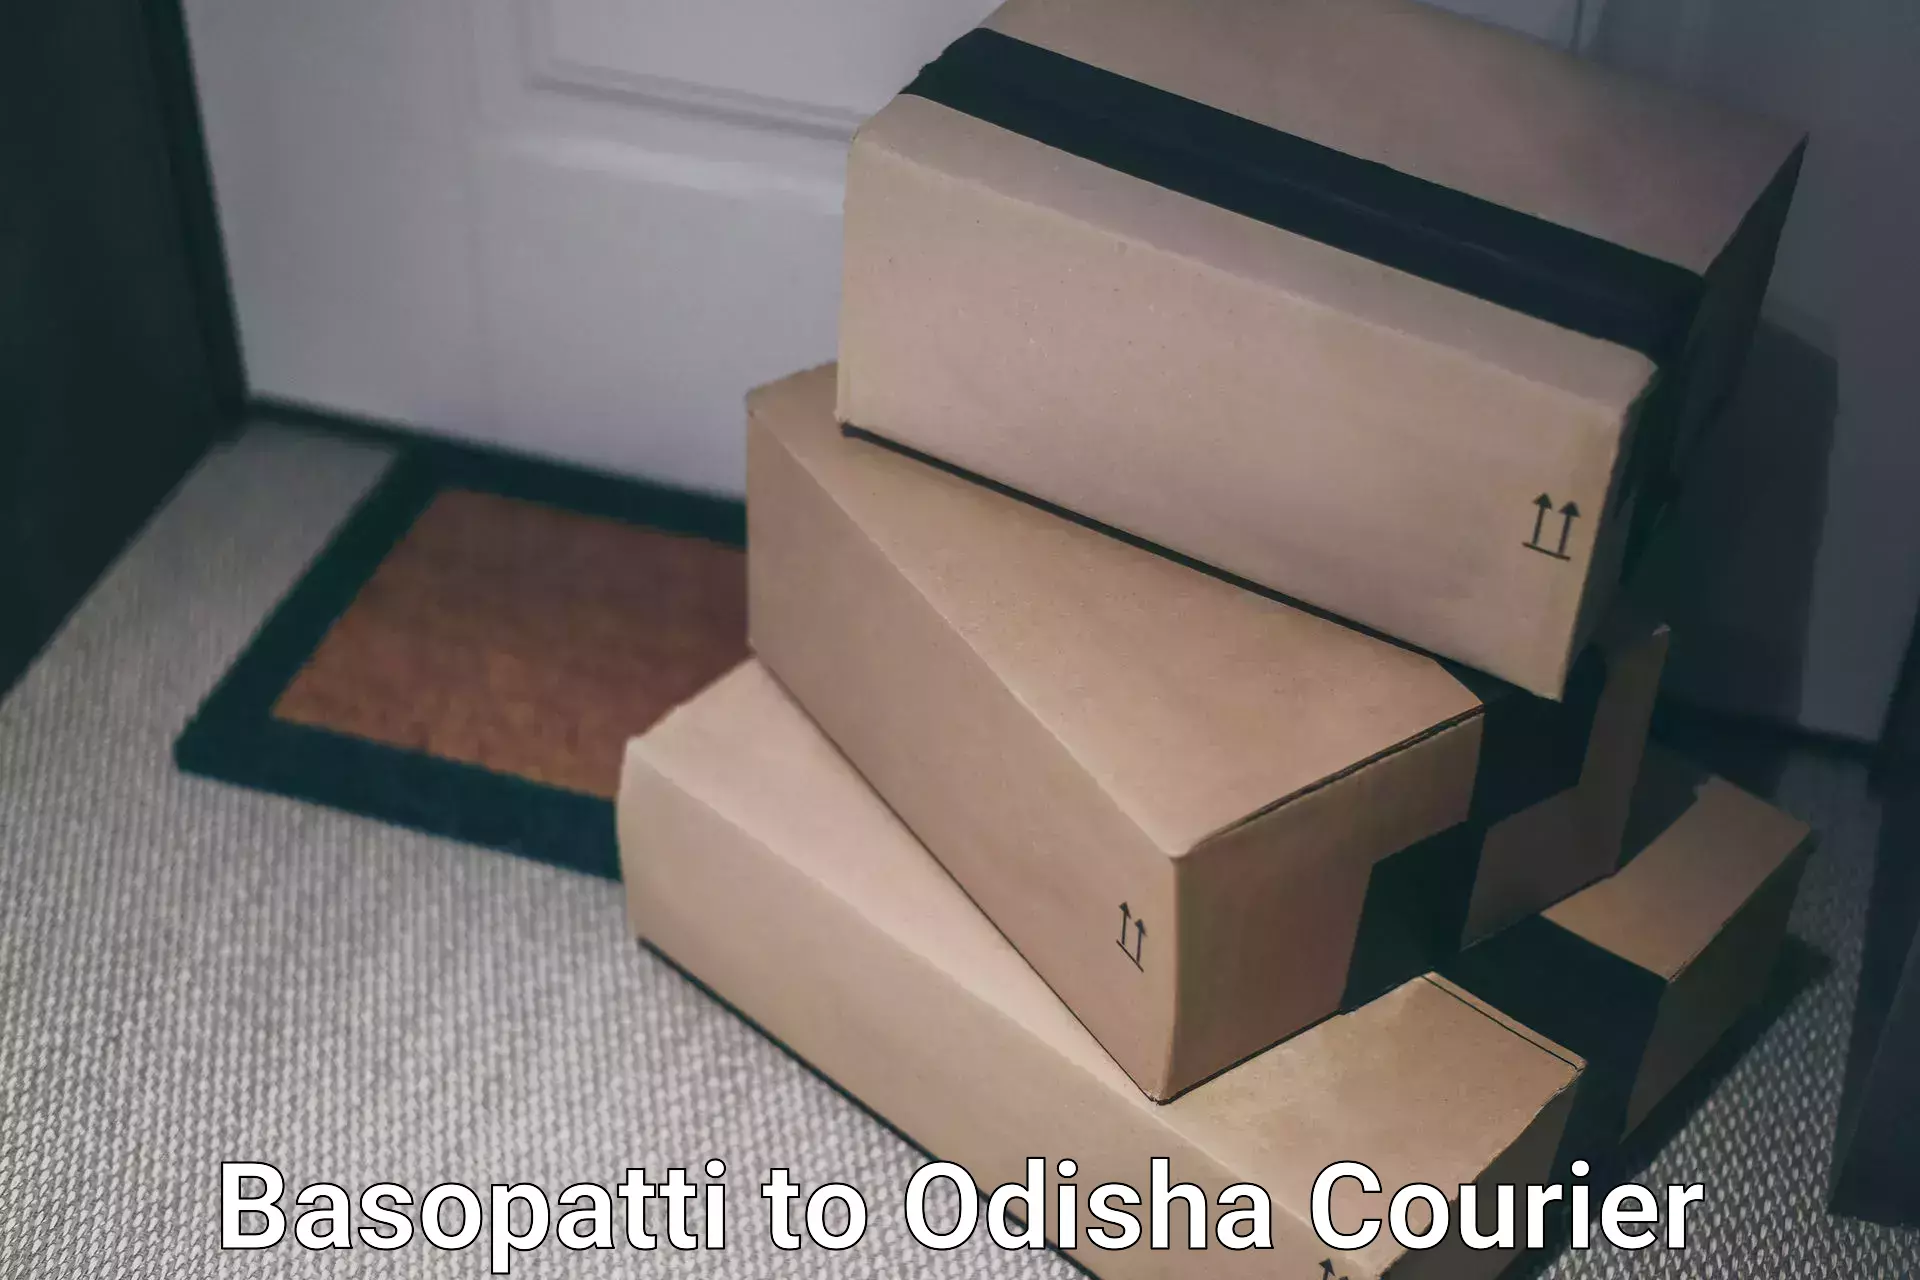 Next-day delivery options Basopatti to Junagarh Kalahandi